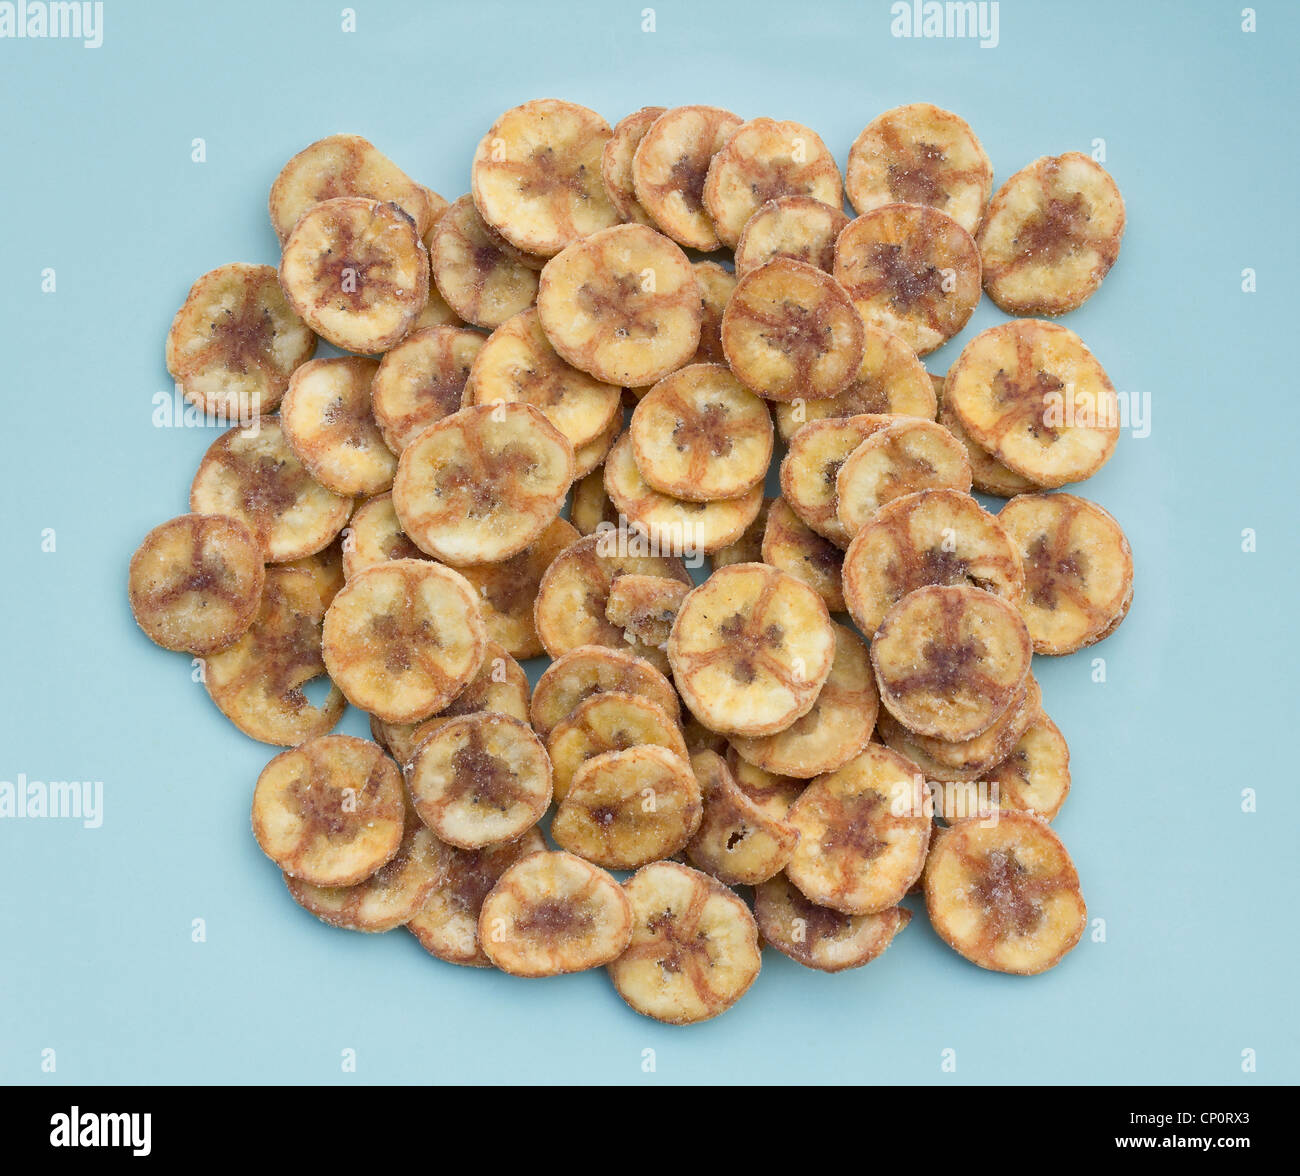 Rodajas de plátano secadas recubierto con azúcar o dulces crujiente de plátano Foto de stock